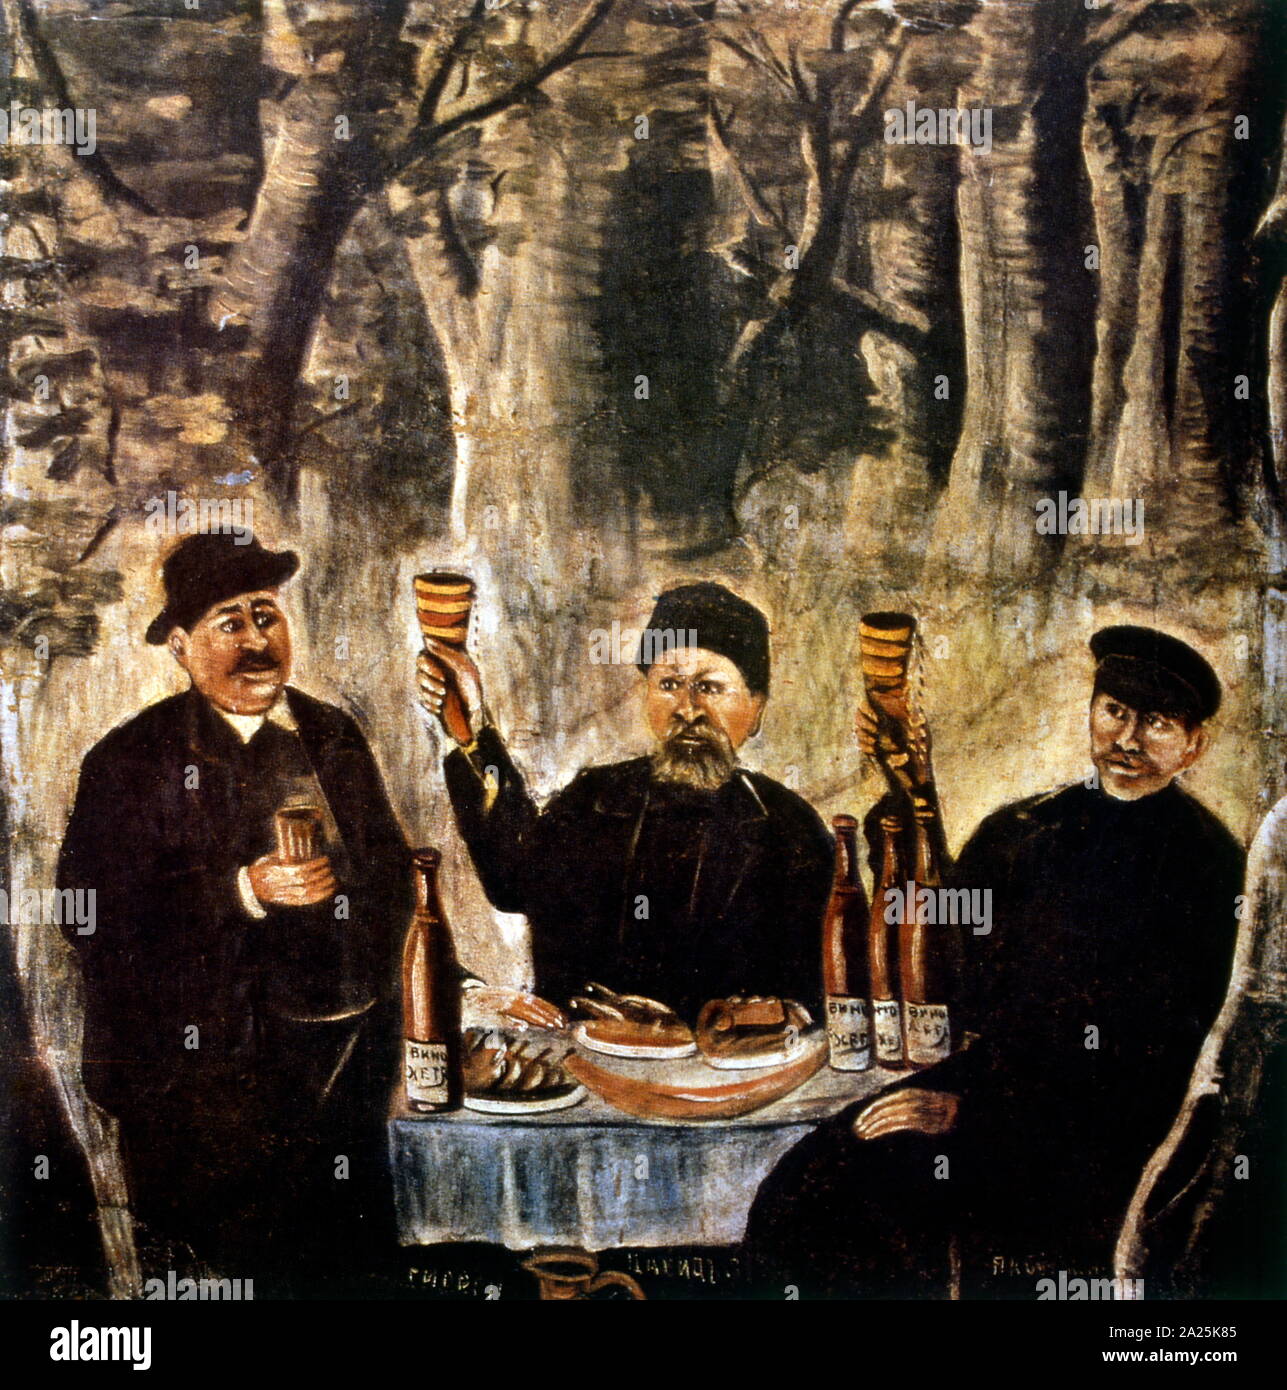 Fest der vier ältesten Stadt 1904 von Niko Pirosmani (1862-1918), Russische, georgische primitivistische Maler, der posthum zum Vorsprung stieg. Stockfoto